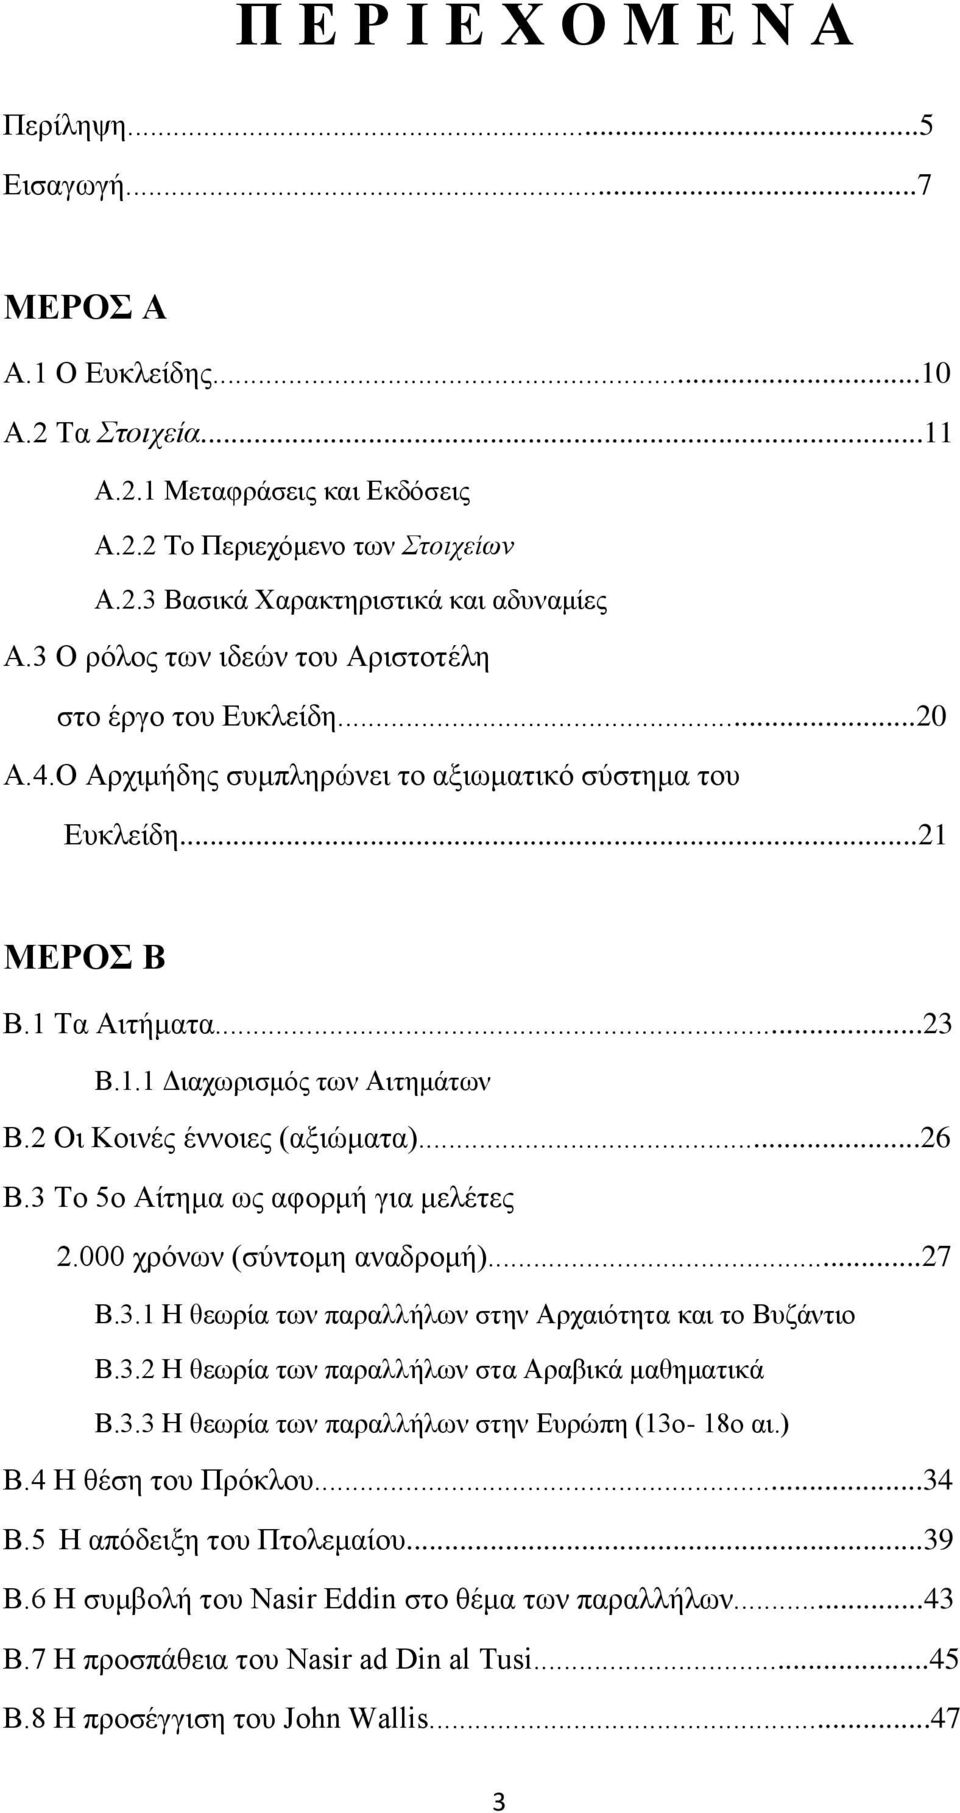 2 Οι Κοινές έννοιες (αξιώματα)...26 Β.3 Το 5ο Αίτημα ως αφορμή για μελέτες 2.000 χρόνων (σύντομη αναδρομή)...27 Β.3.1 Η θεωρία των παραλλήλων στην Αρχαιότητα και το Βυζάντιο Β.3.2 Η θεωρία των παραλλήλων στα Αραβικά μαθηματικά Β.